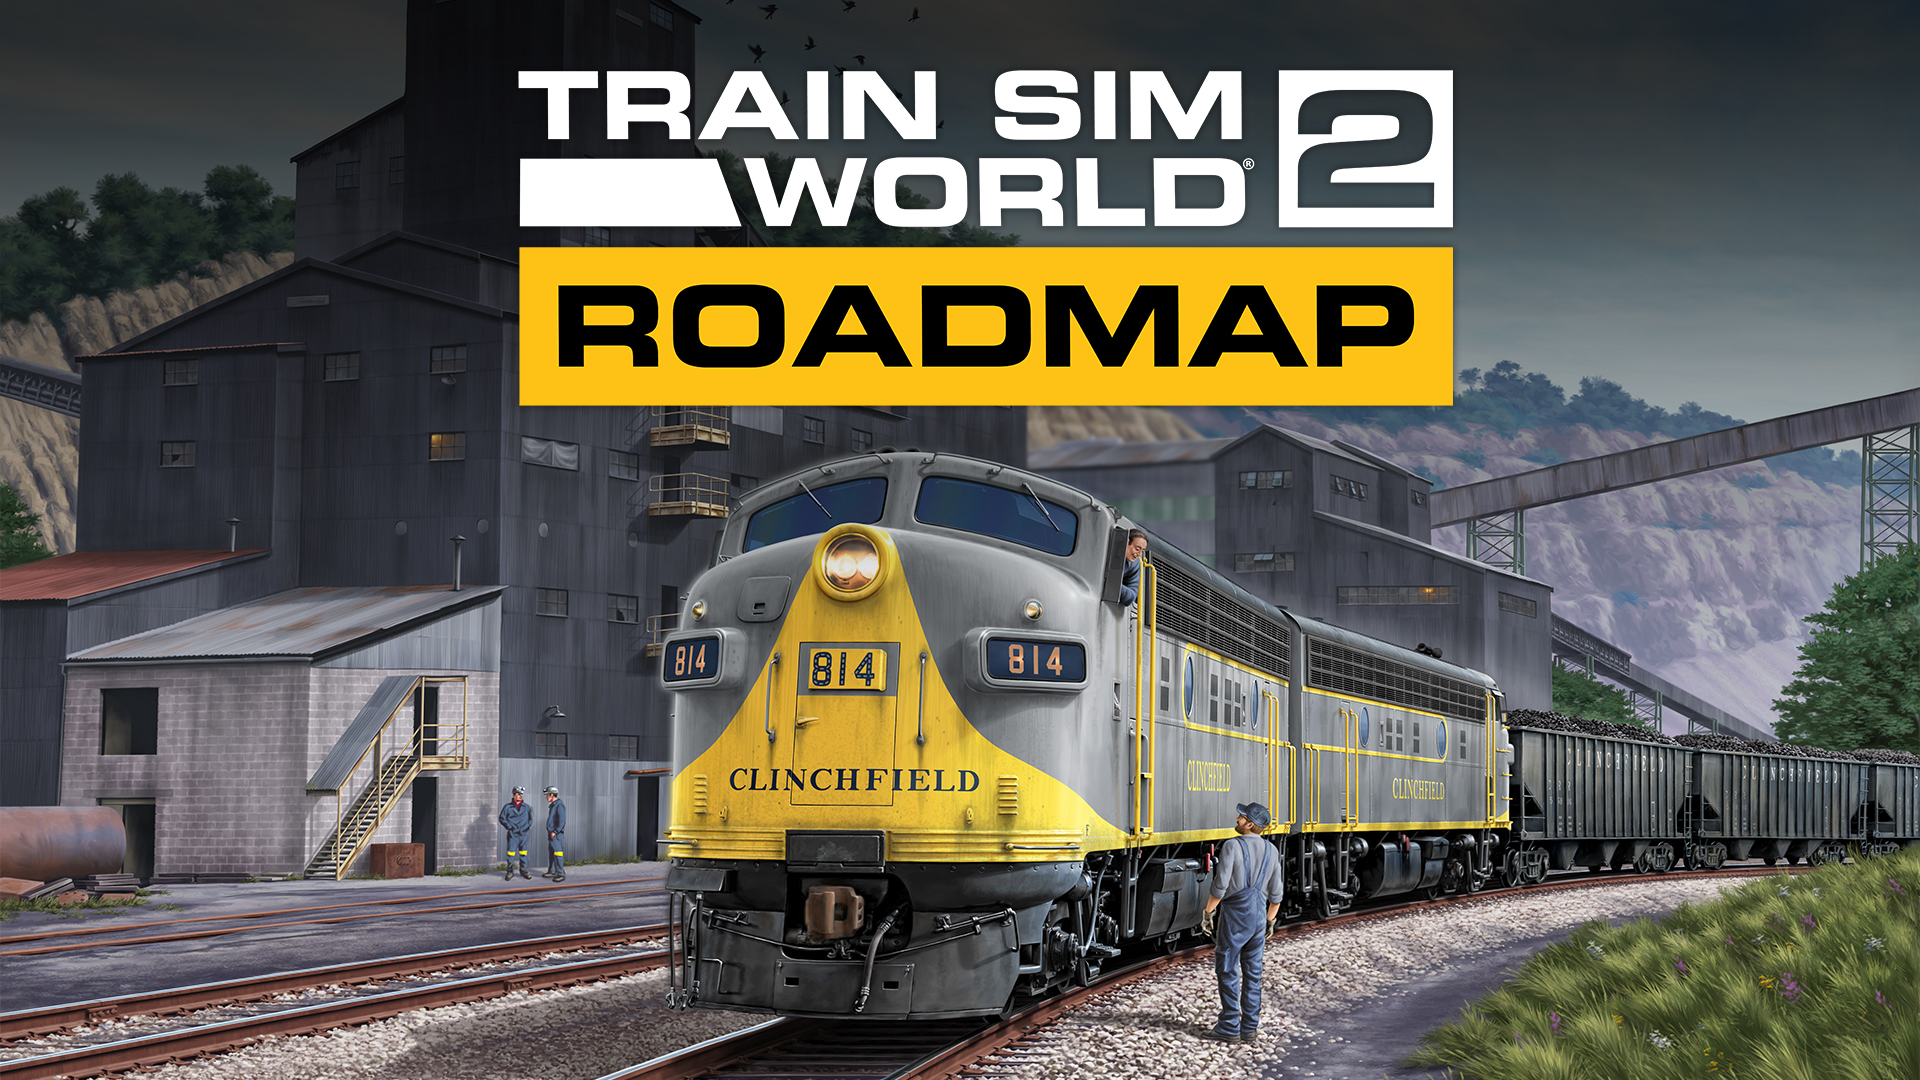 Télécharger des fonds d'écran Train Sim World 2 HD